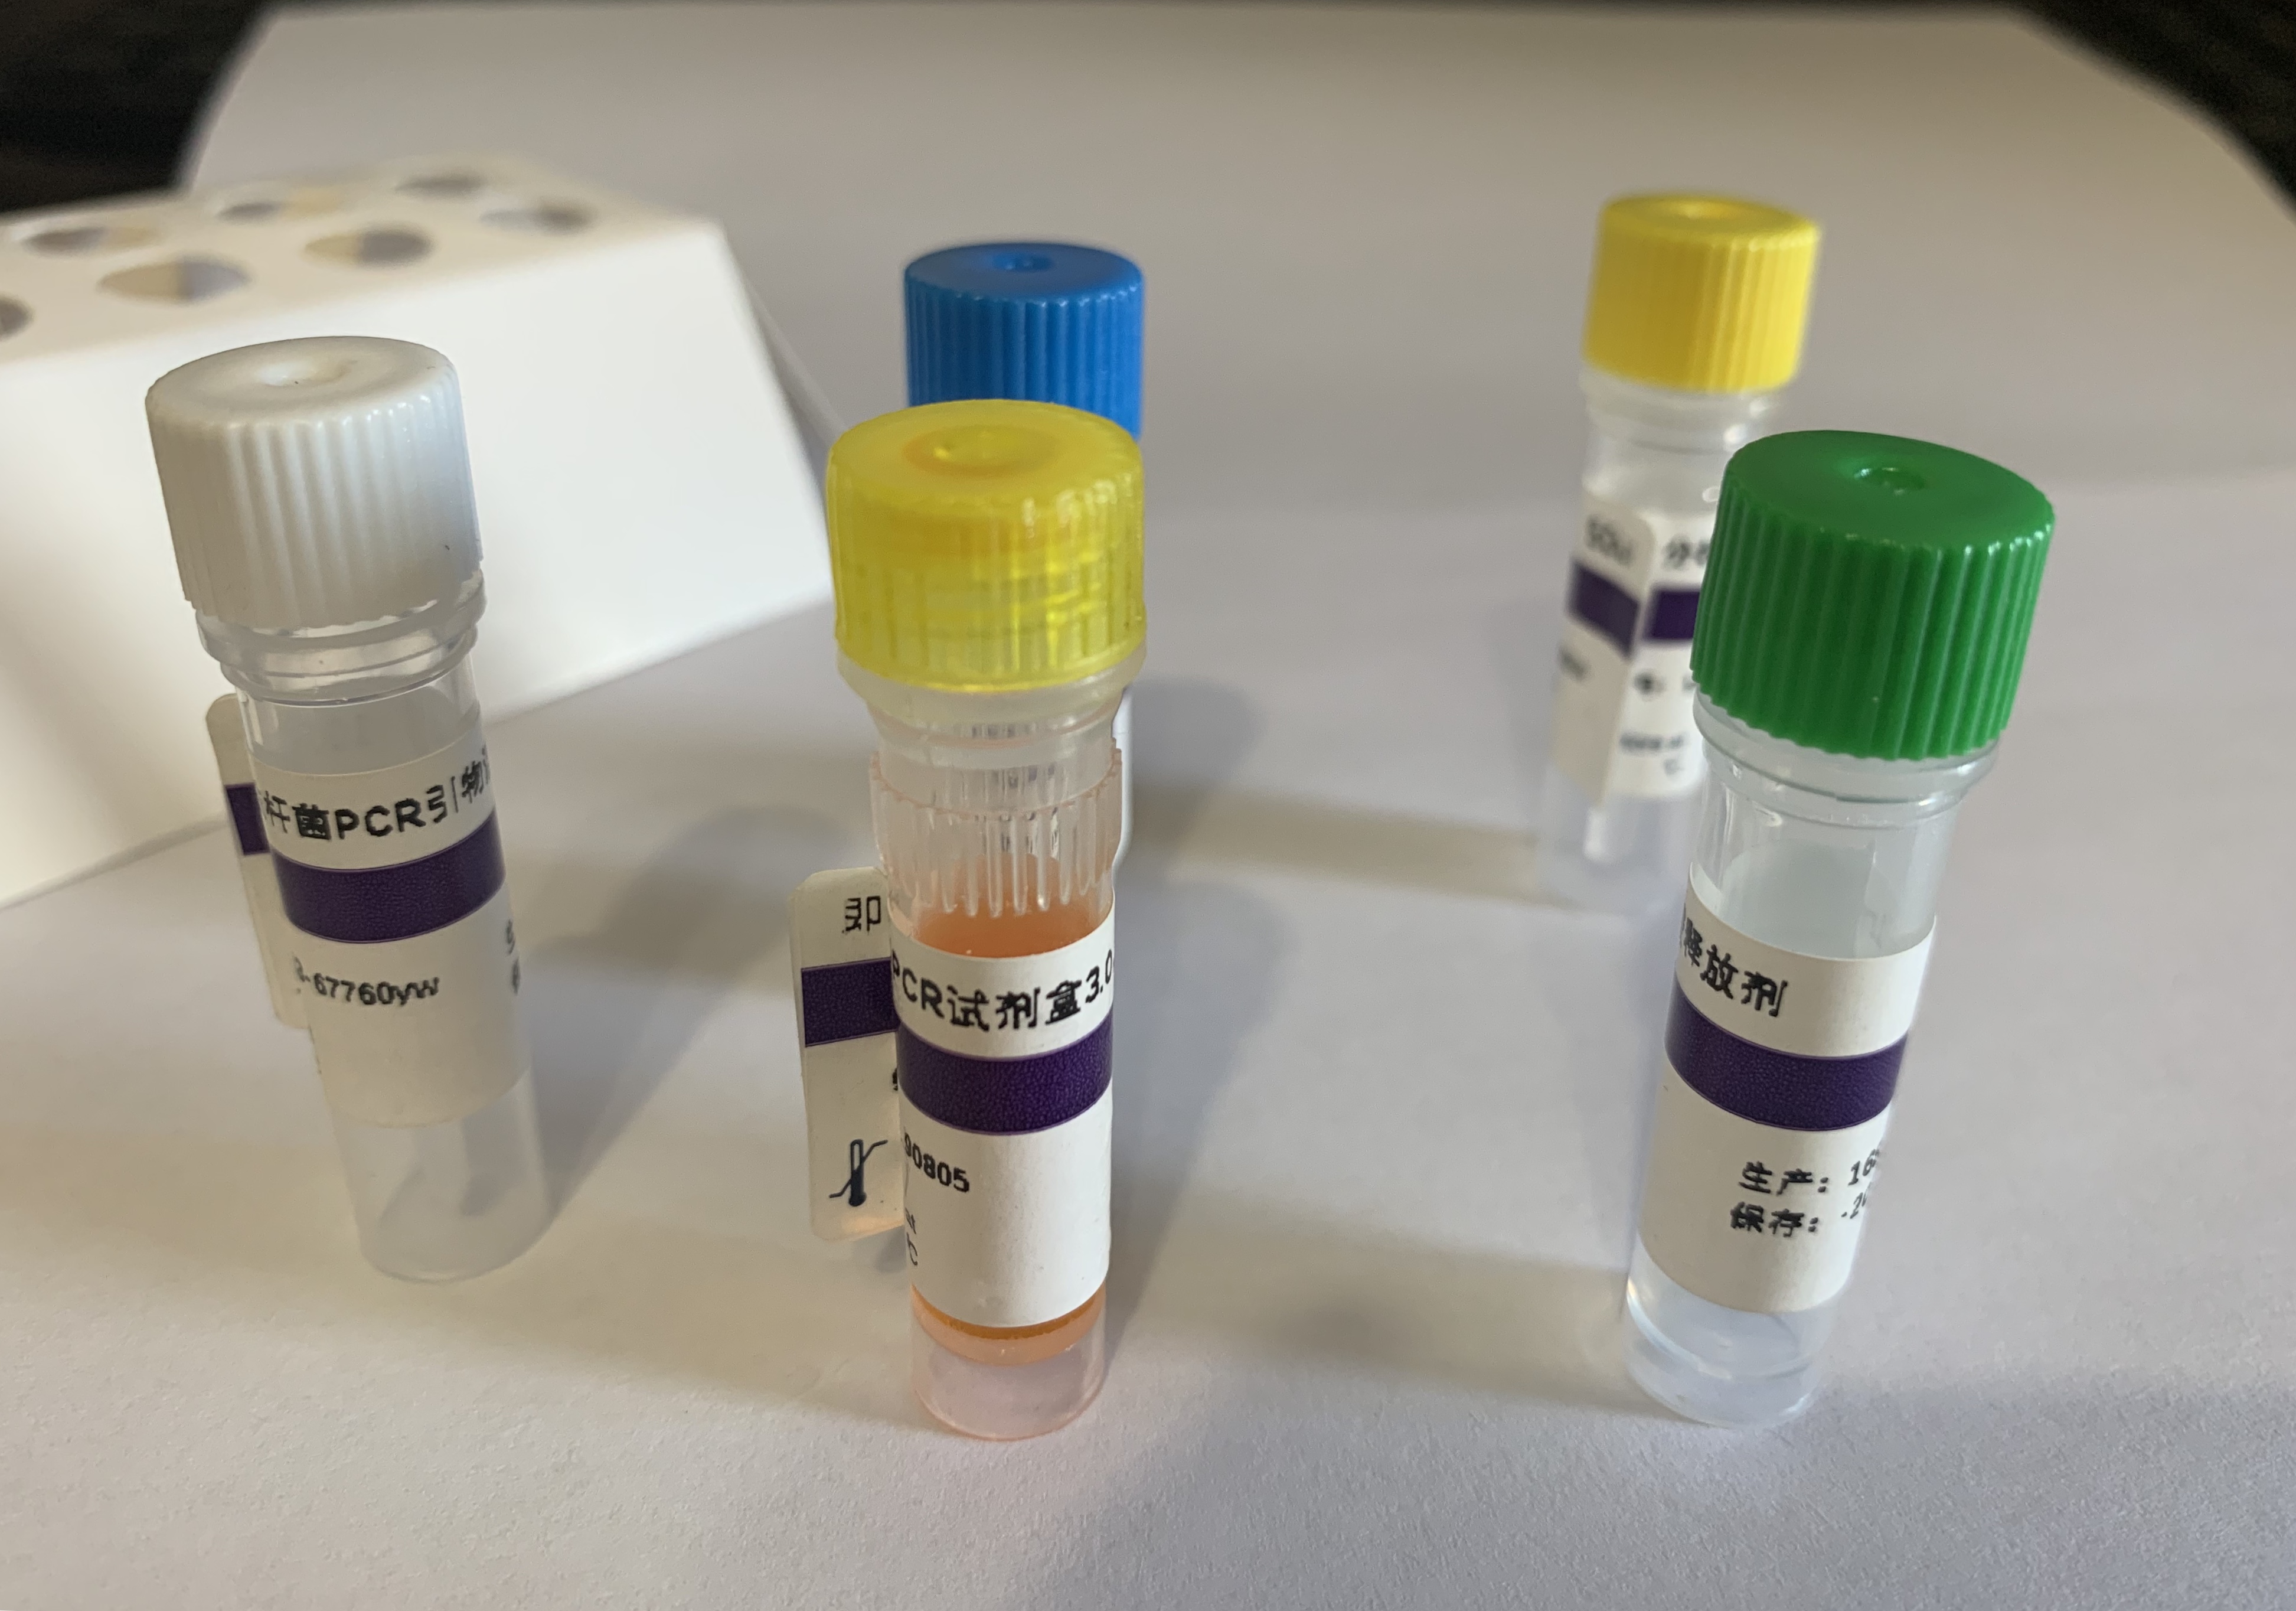 生孢梭菌（生孢梭状芽孢杆菌）PCR试剂盒